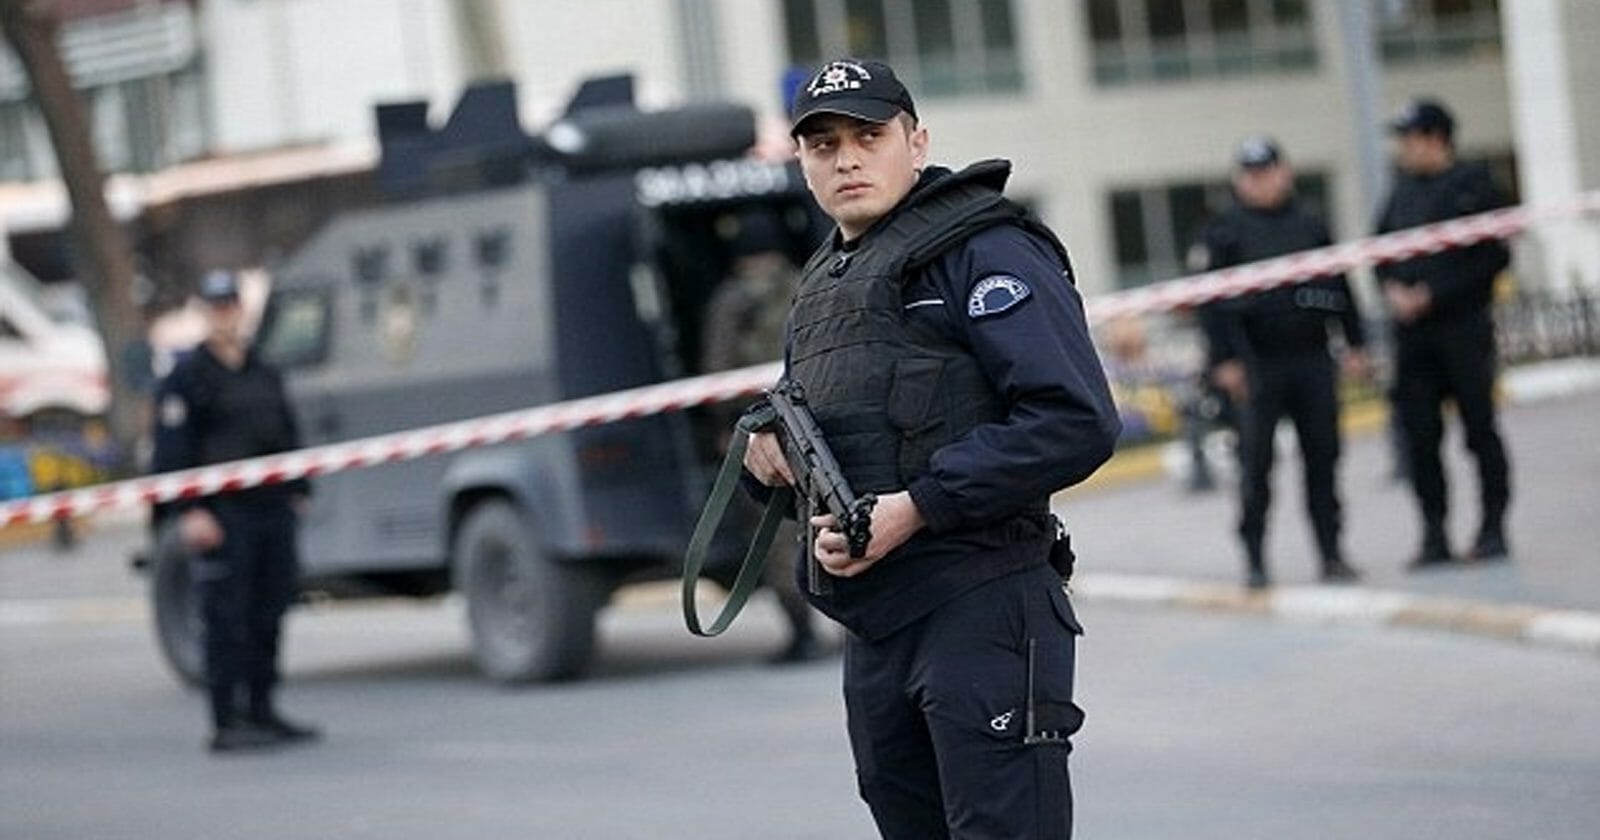 ضابط شرطة تركي يجلد 3 رجال عراة مشتبه بهم بسرقة البيوت المدمرة بفعل الزلزال watanserb.com